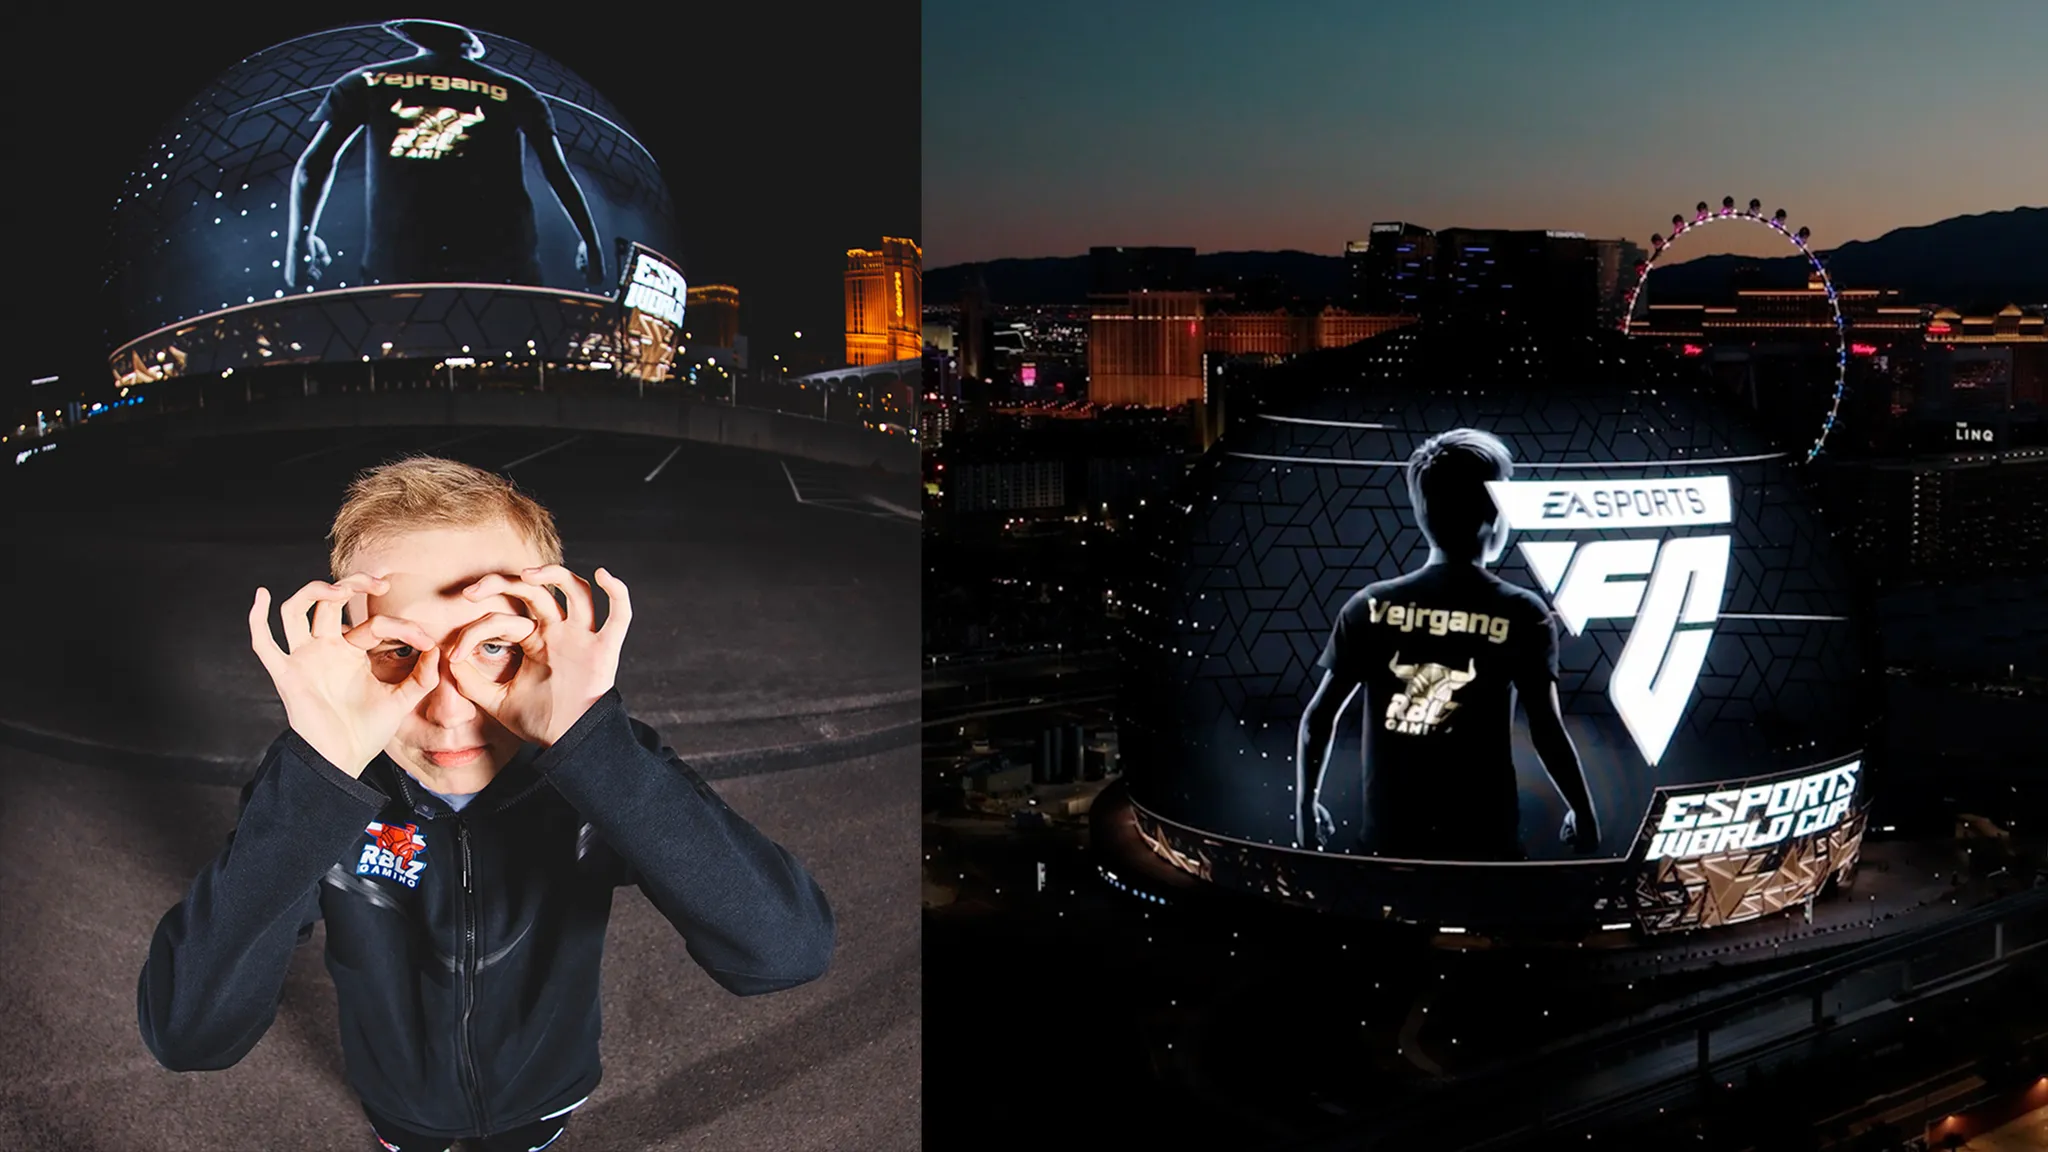 Anders Vejrgang posiert vor der Sphere in Las Vegas